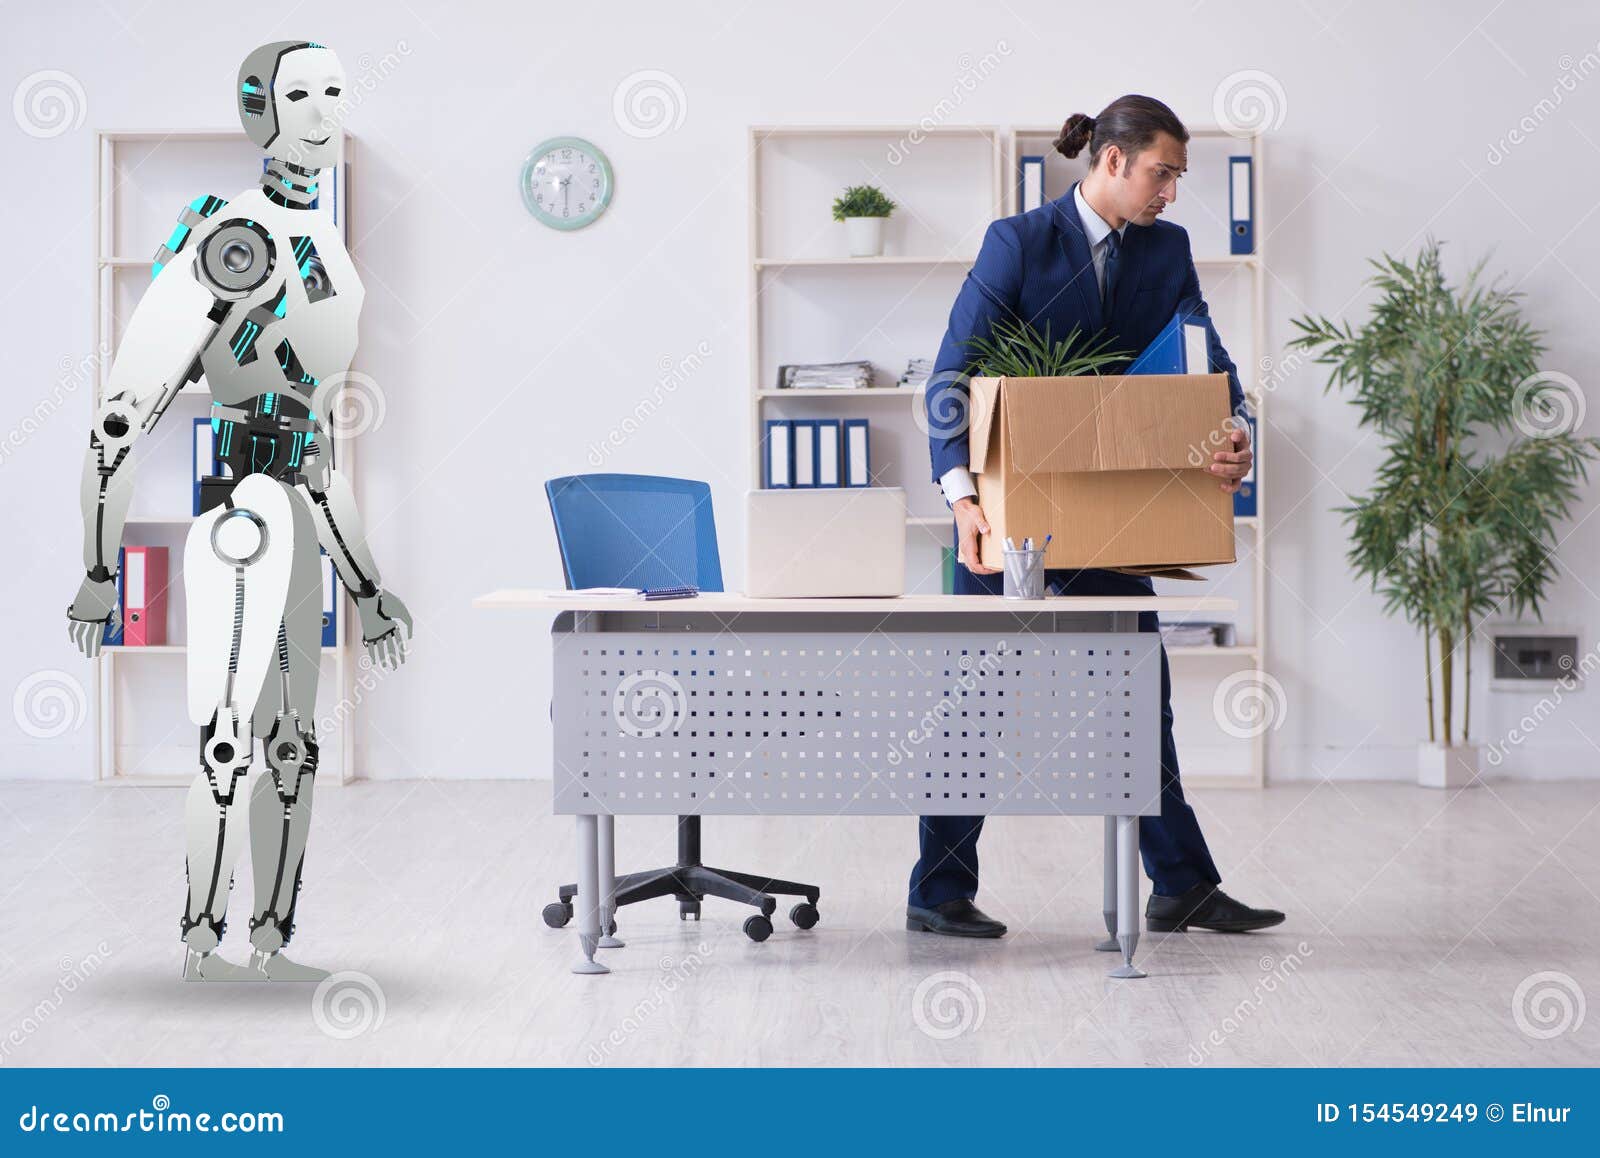 Как будут работать роботы. Роботизация человека. Профессии искусственный интеллект. Роботы заменят людей. Робот бухгалтер.